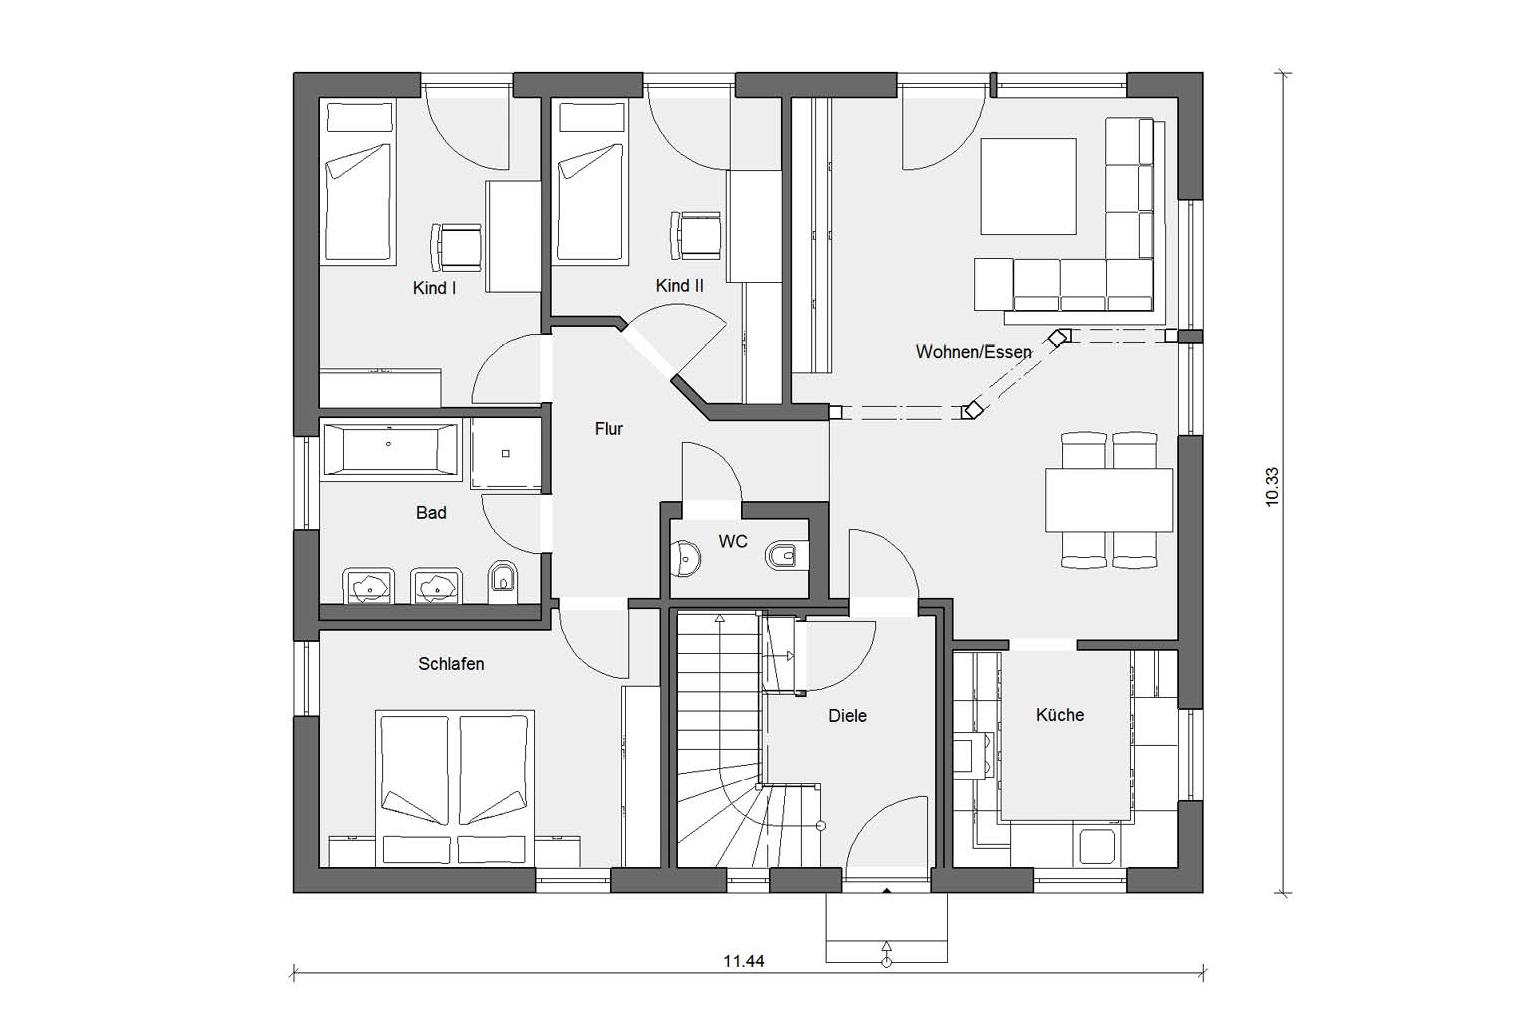 Plan d'étage rez-de-chaussée M 15-199.2 Maison pour deux familles